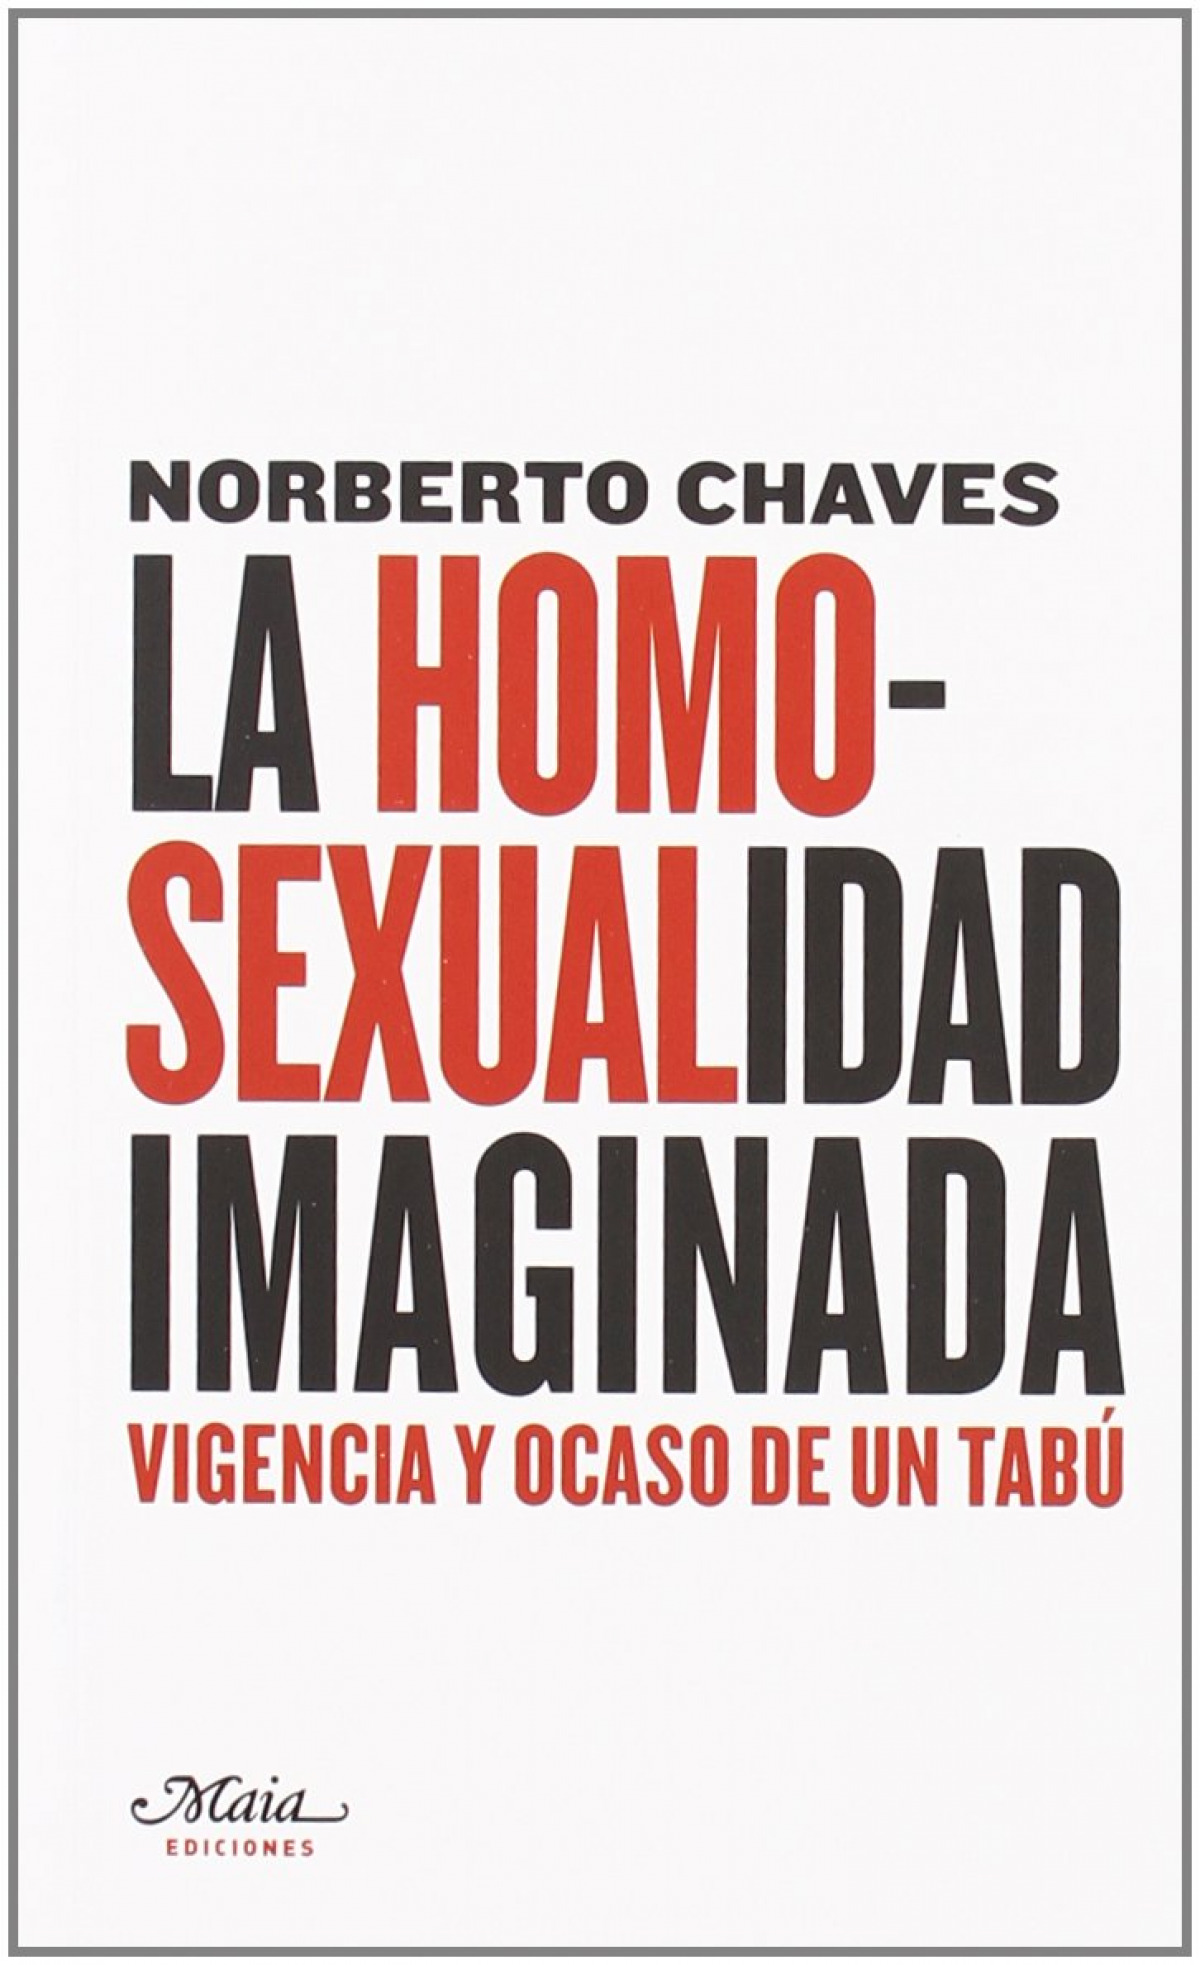 La homosexualidad imaginada vigencia y ocaso de un tabú - Norberto Chaves